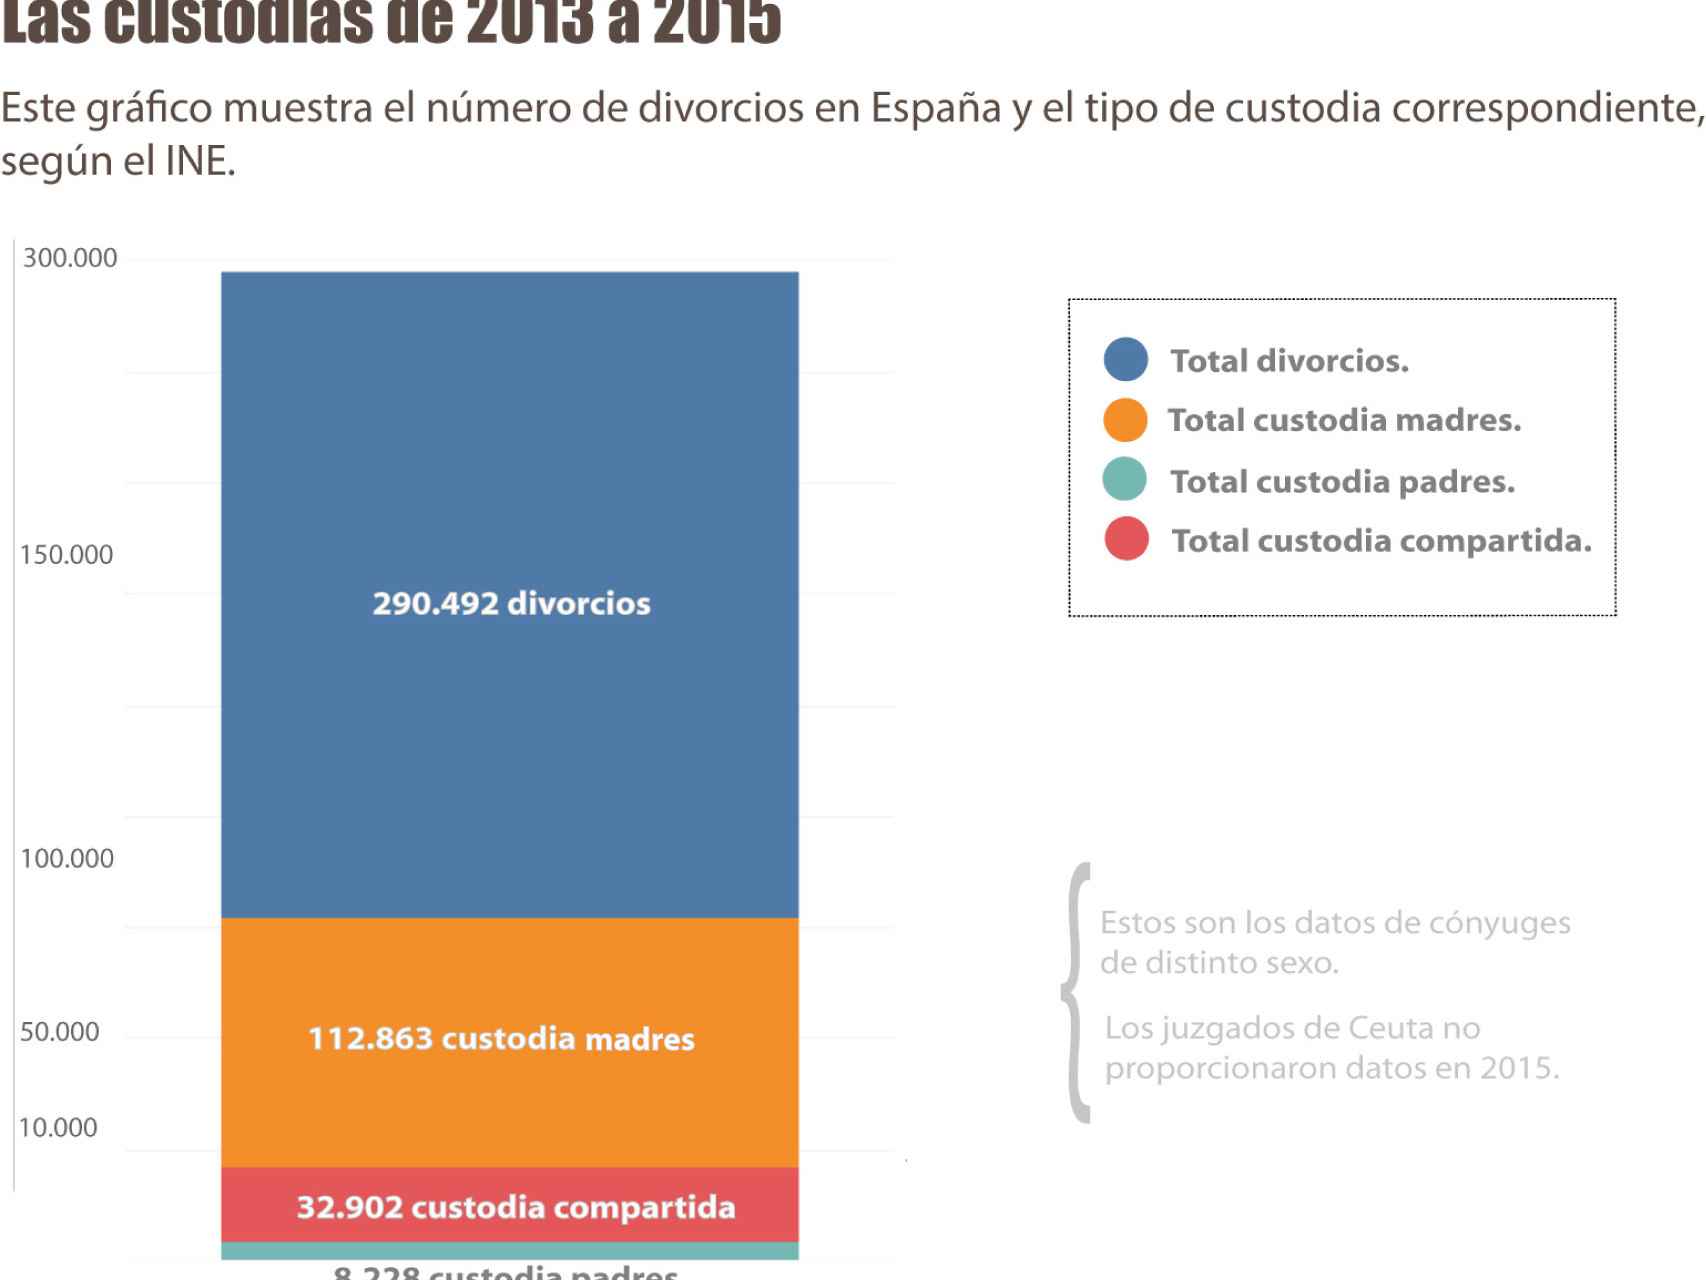 Tipos de custodia en España de 2013 a 2015.